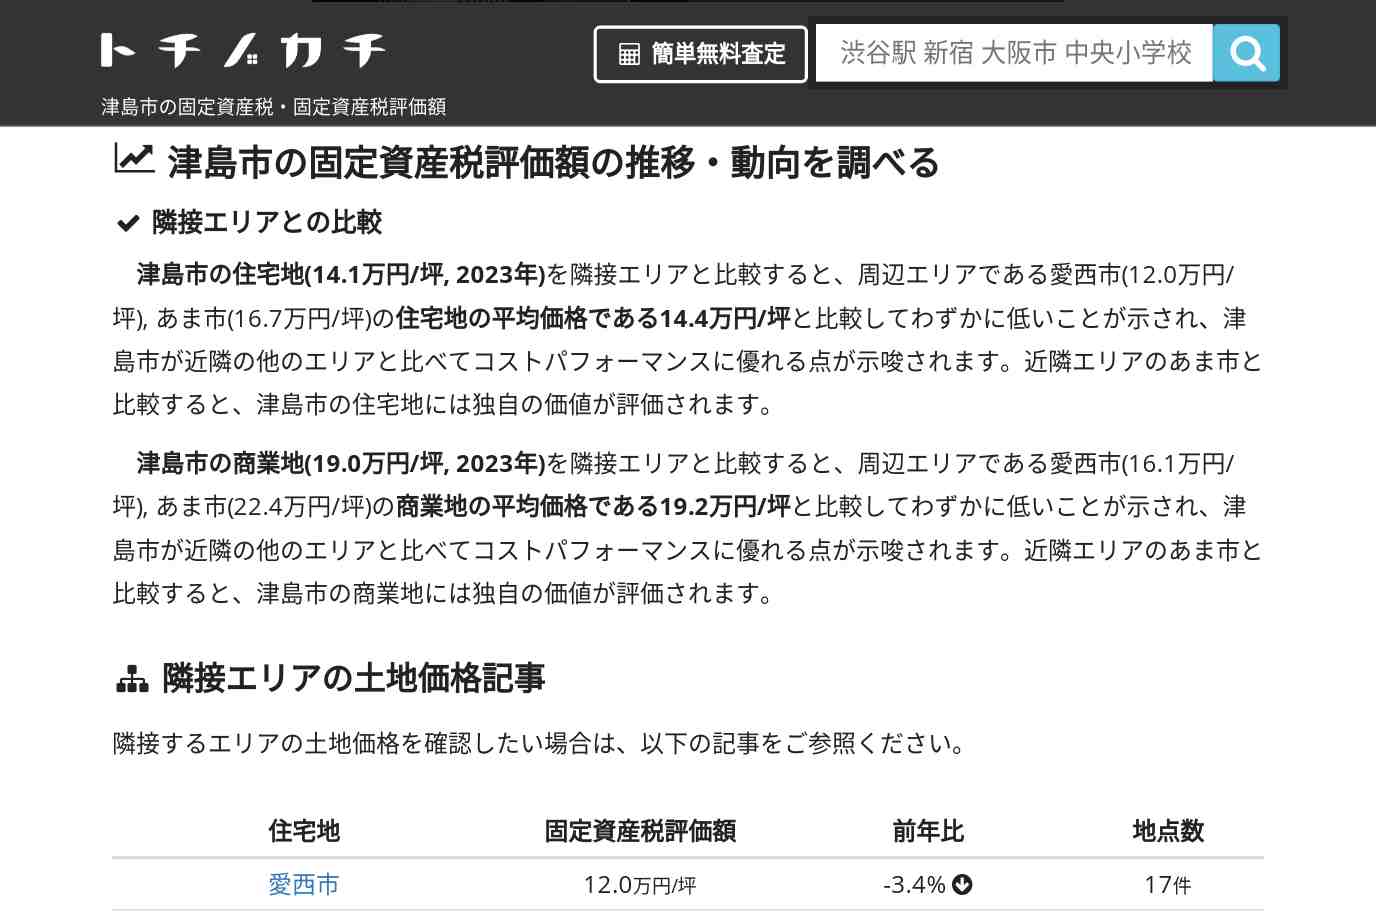 神守中学校(愛知県 津島市)周辺の固定資産税・固定資産税評価額 | トチノカチ